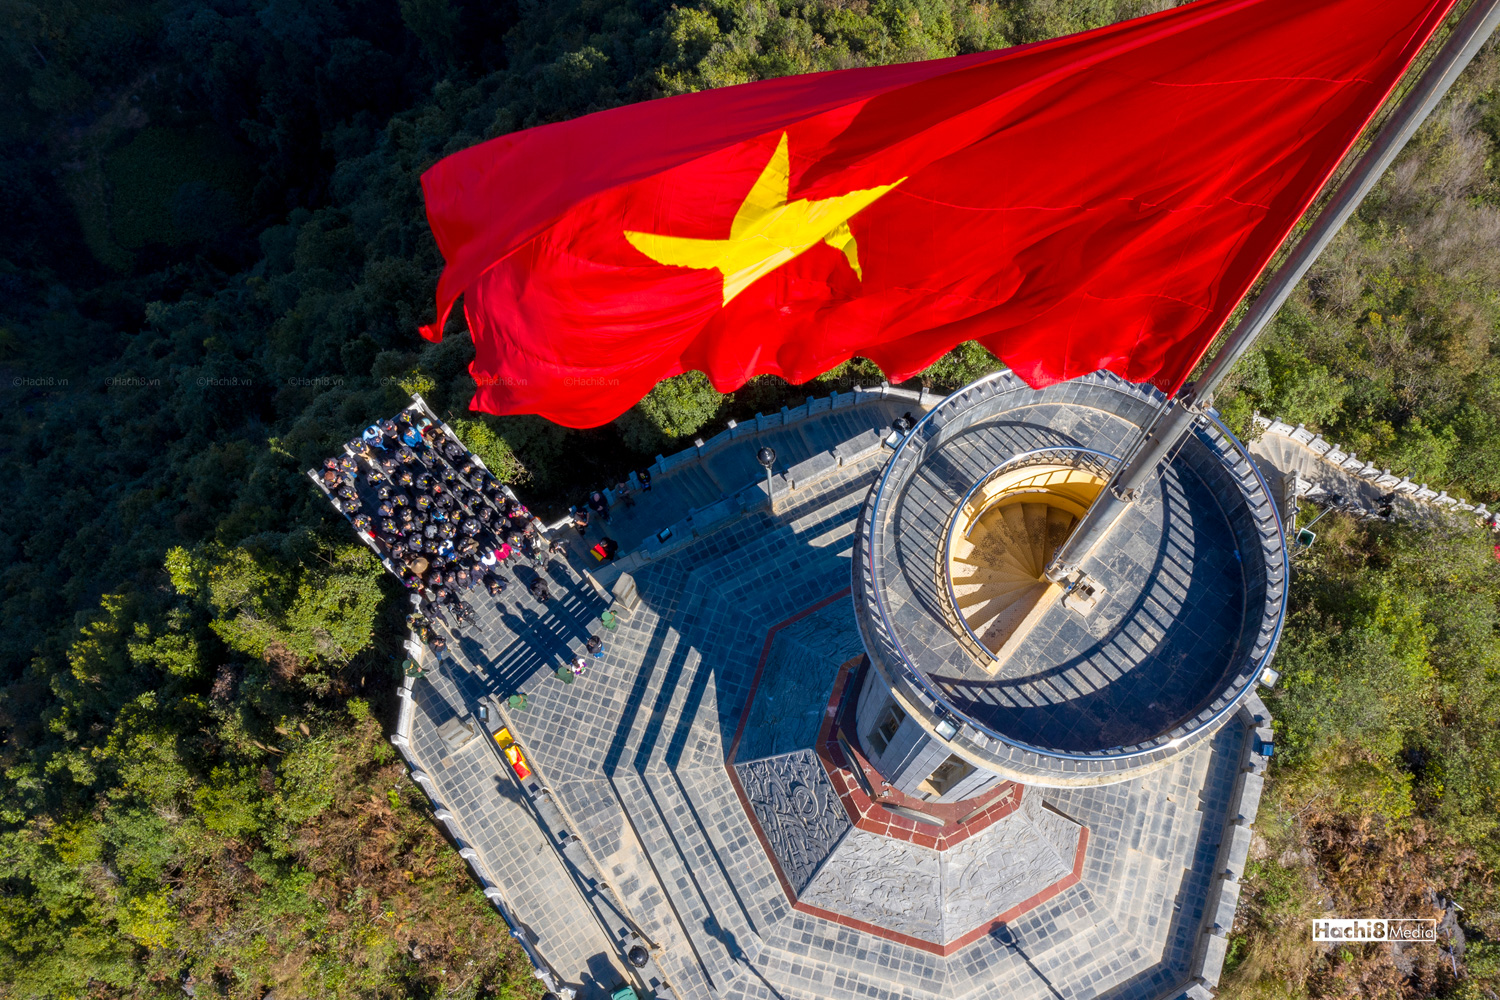 Hãy cùng vinh danh và tự hào về Quốc kỳ cờ đỏ sao vàng, biểu tượng tuyệt vời của sự độc lập và sức mạnh của Đất nước Việt Nam! Đó là niềm kiêu hãnh và sự gắn bó của mọi người dân Việt, và chúng ta hãy cùng nhìn lại lịch sử đầy thăng trầm bằng cách chọn xem hình ảnh xúc động về Cờ Việt Nam này.